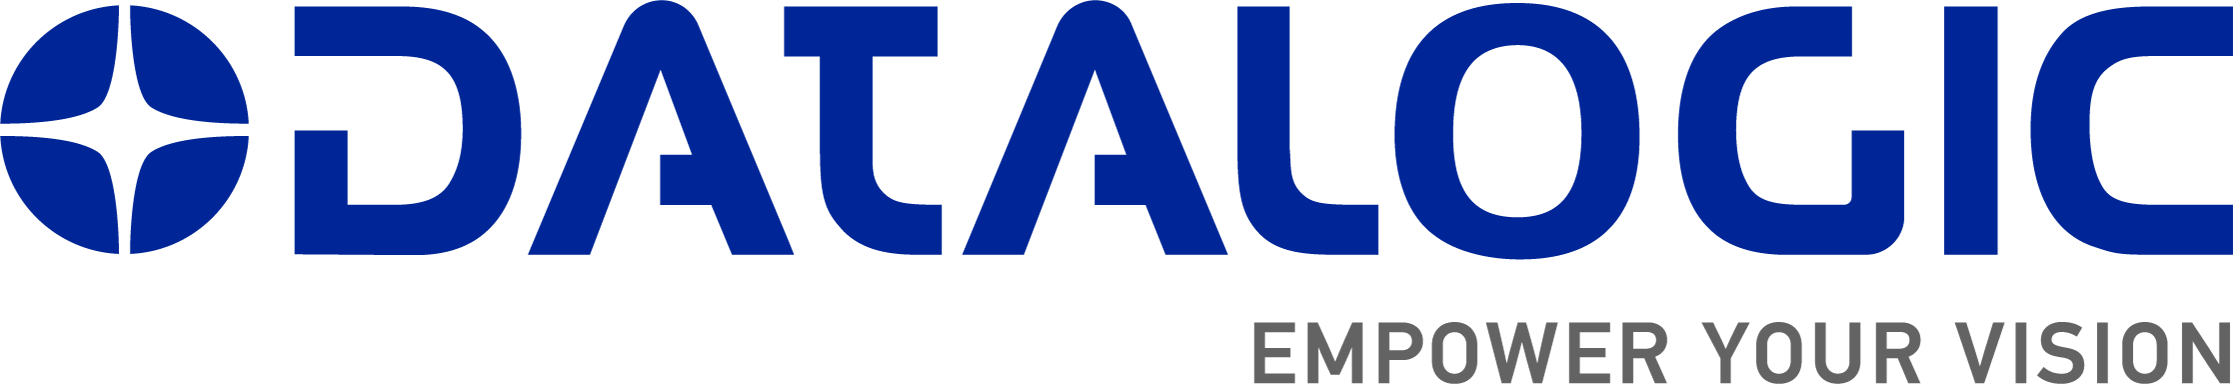 13 logo datalogic